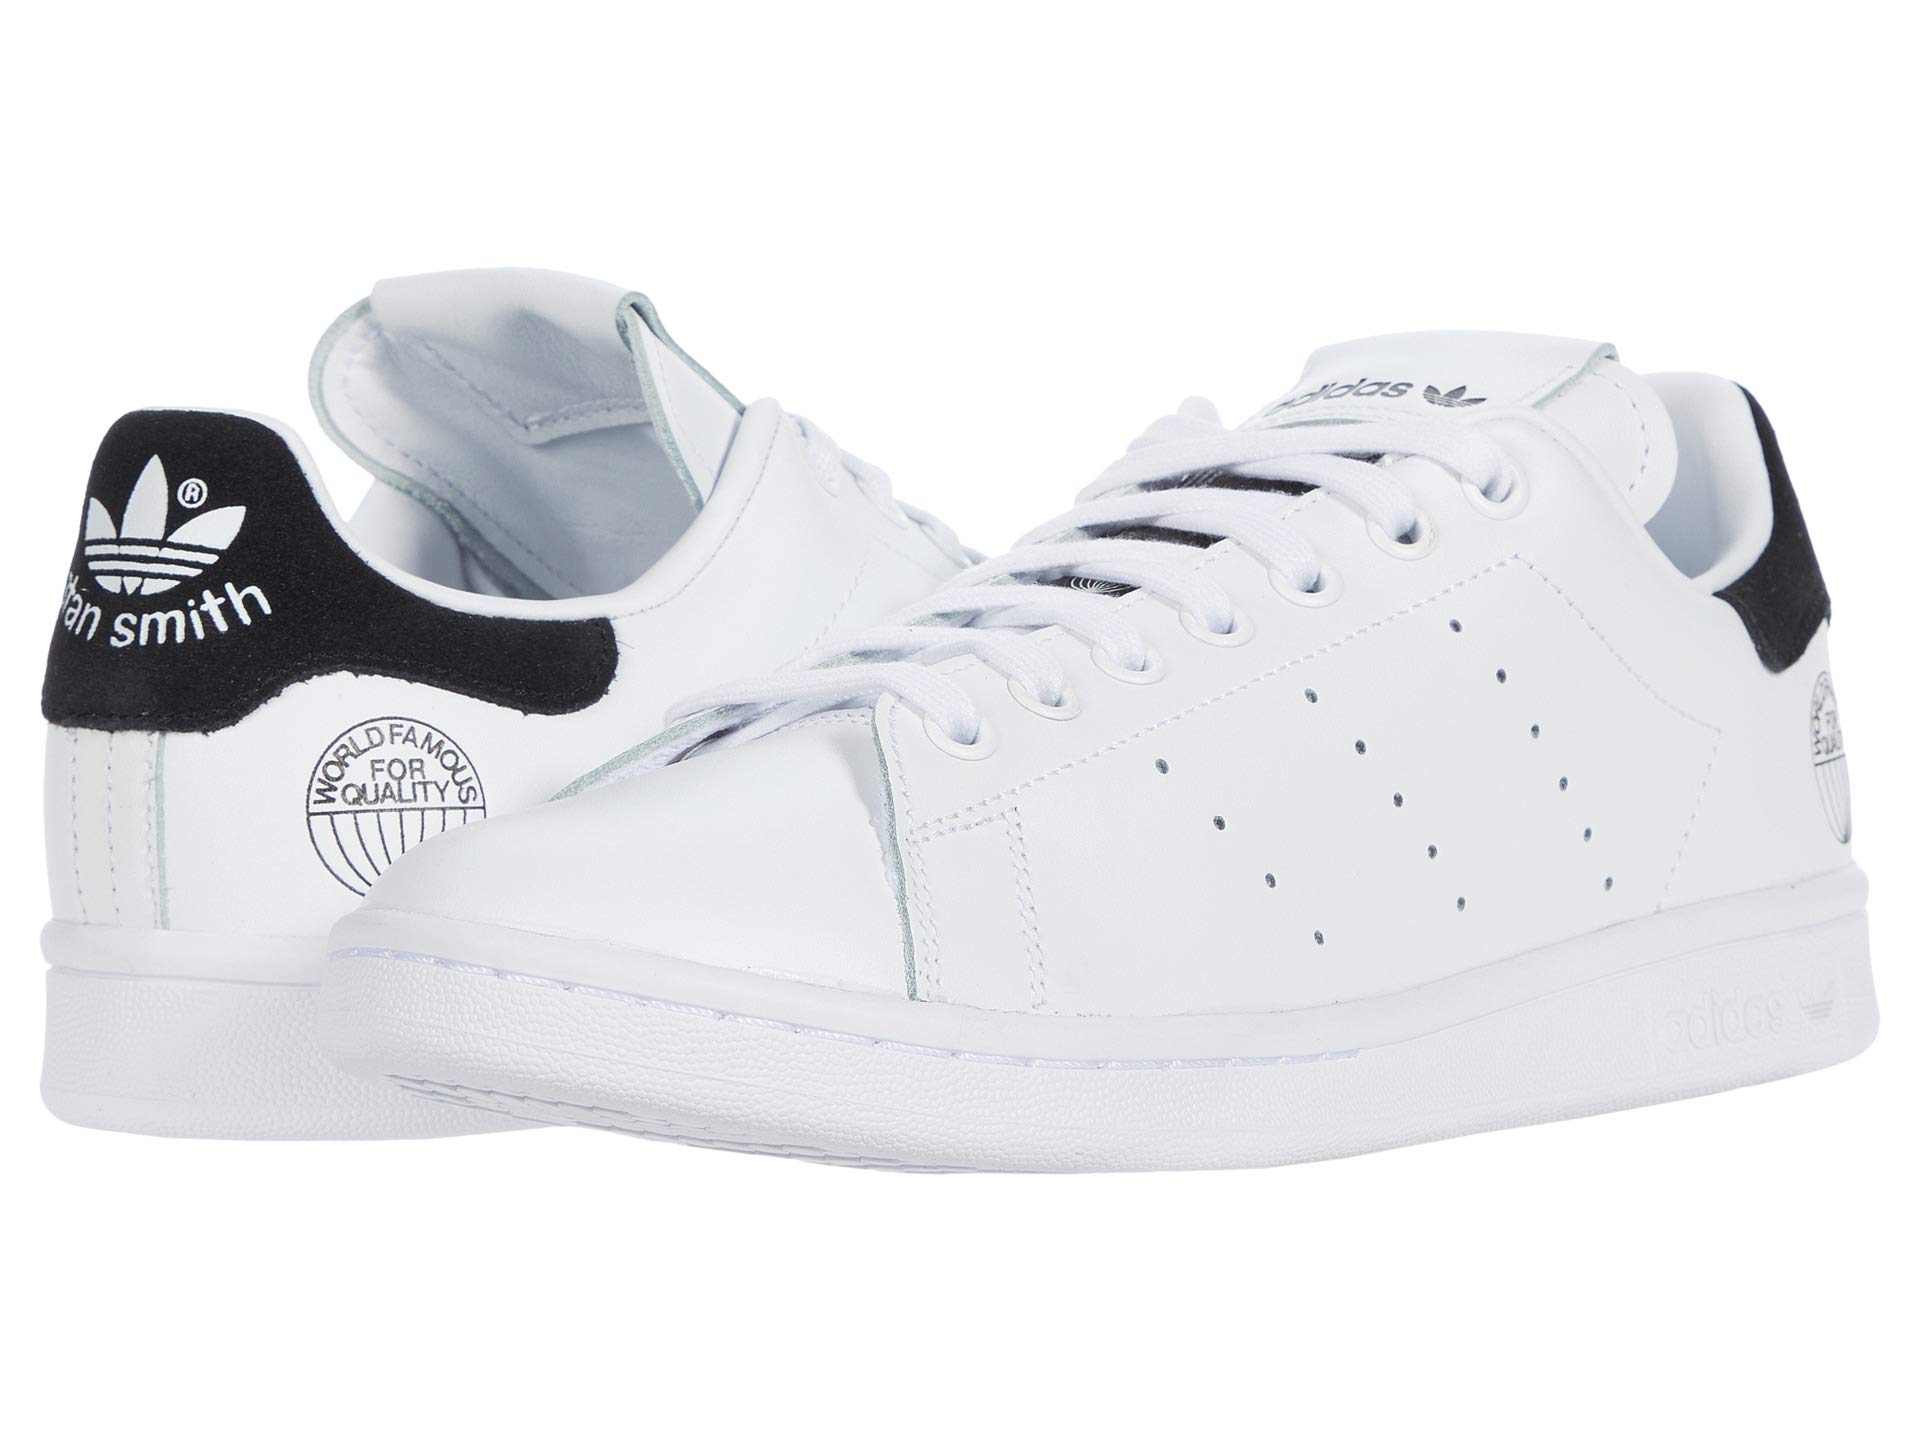 Мужские кроссовки Adidas Originals Stan Smith, белый/черный кроссовки adidas originals forum low цвет footwear white footwear white core black